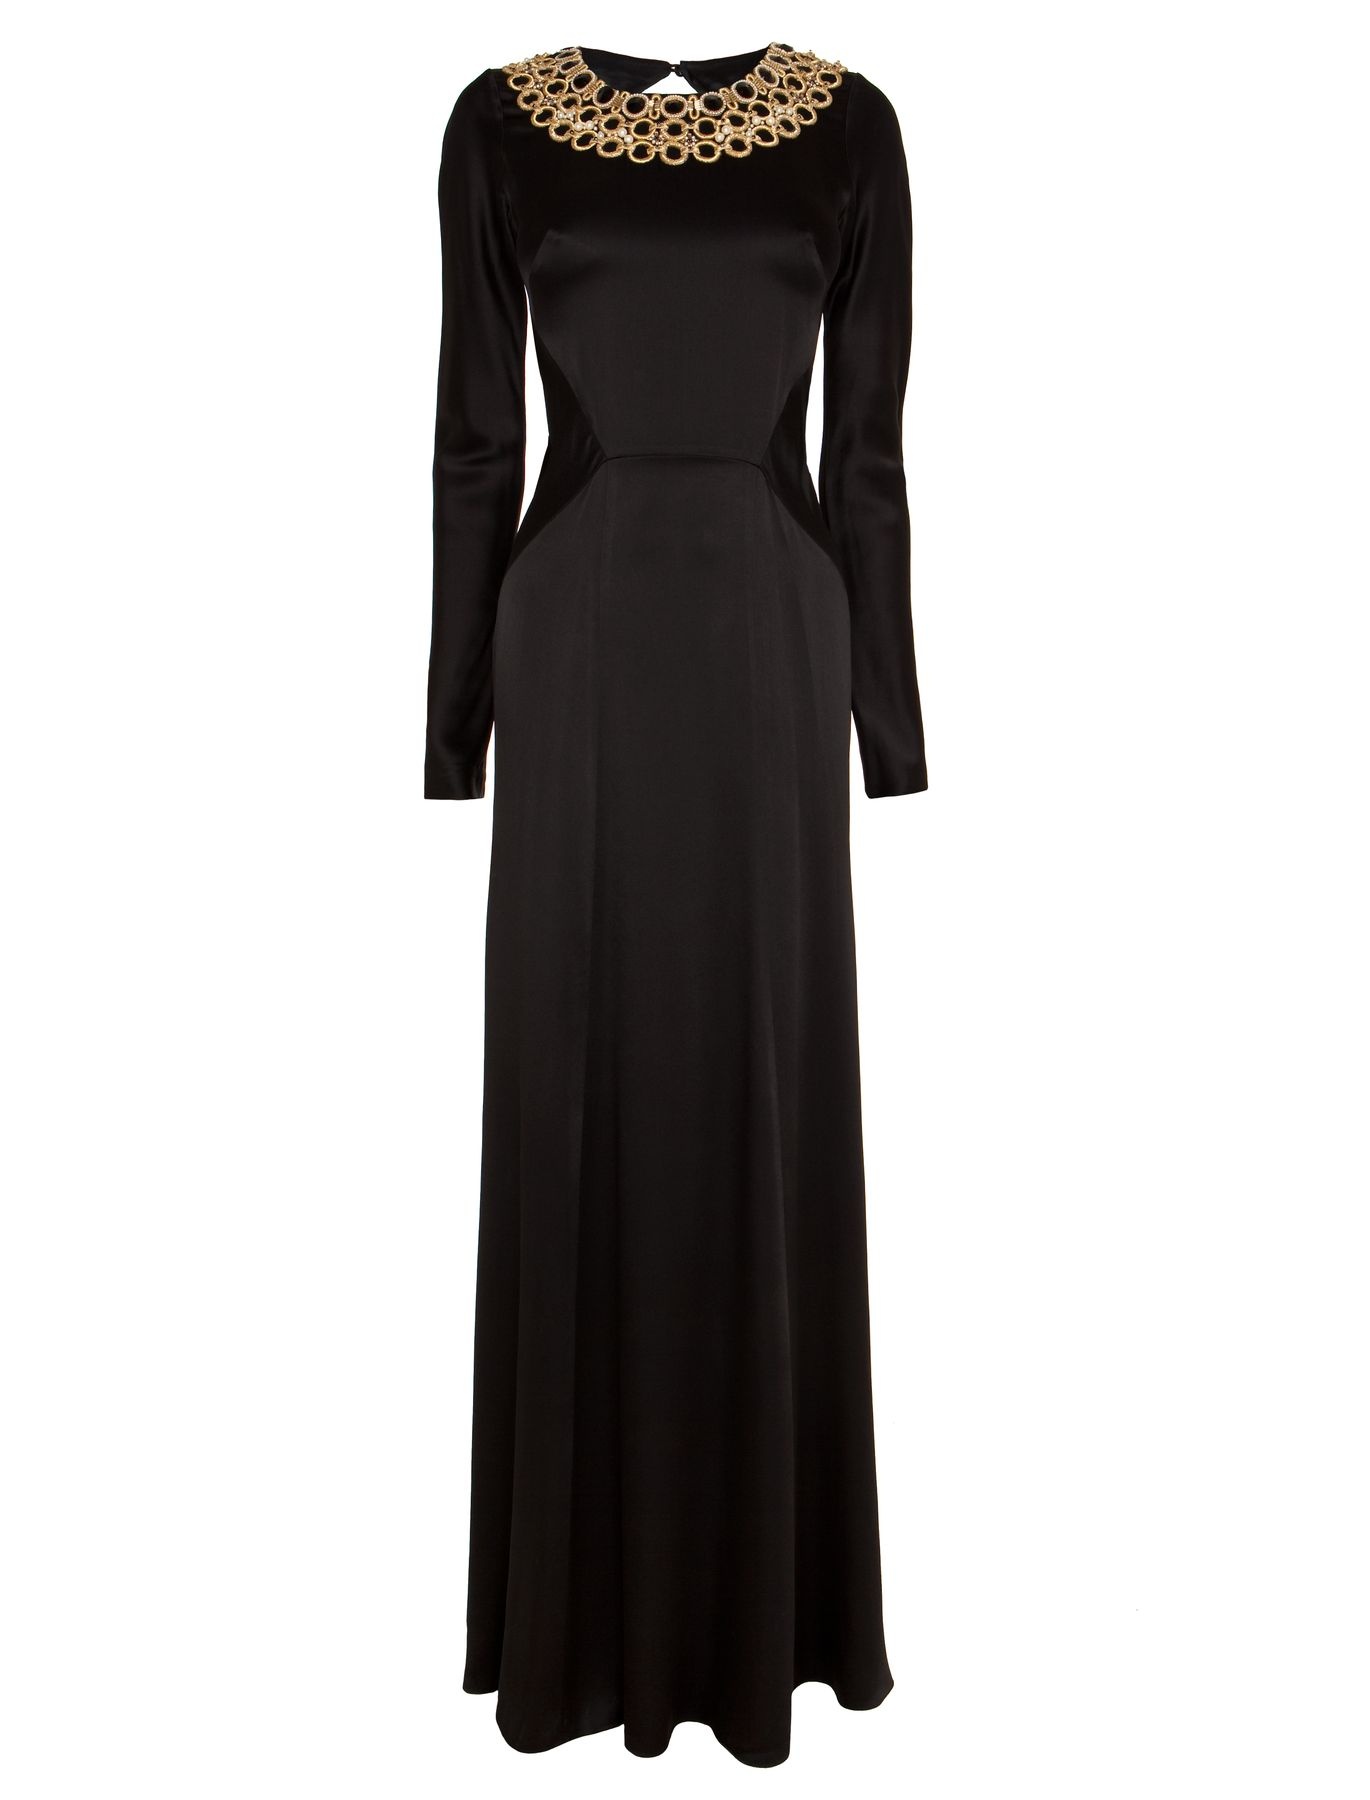 Temperley London Long Open Back Carmel Dress in Black | Lyst